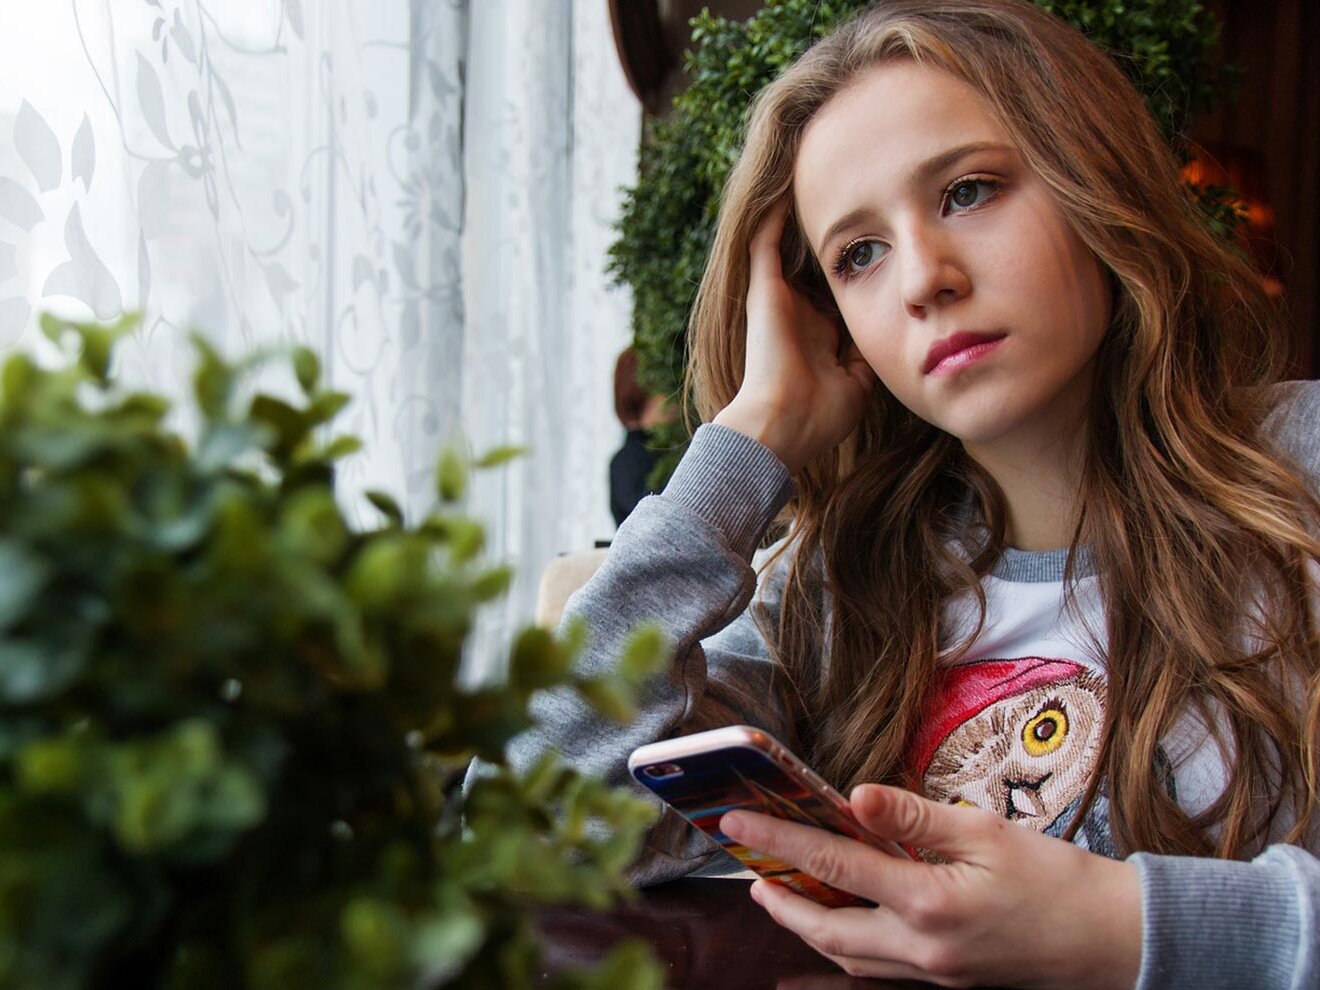 Mädchen mit Smartphone in der Hand schaut traurig aus dem Fenster